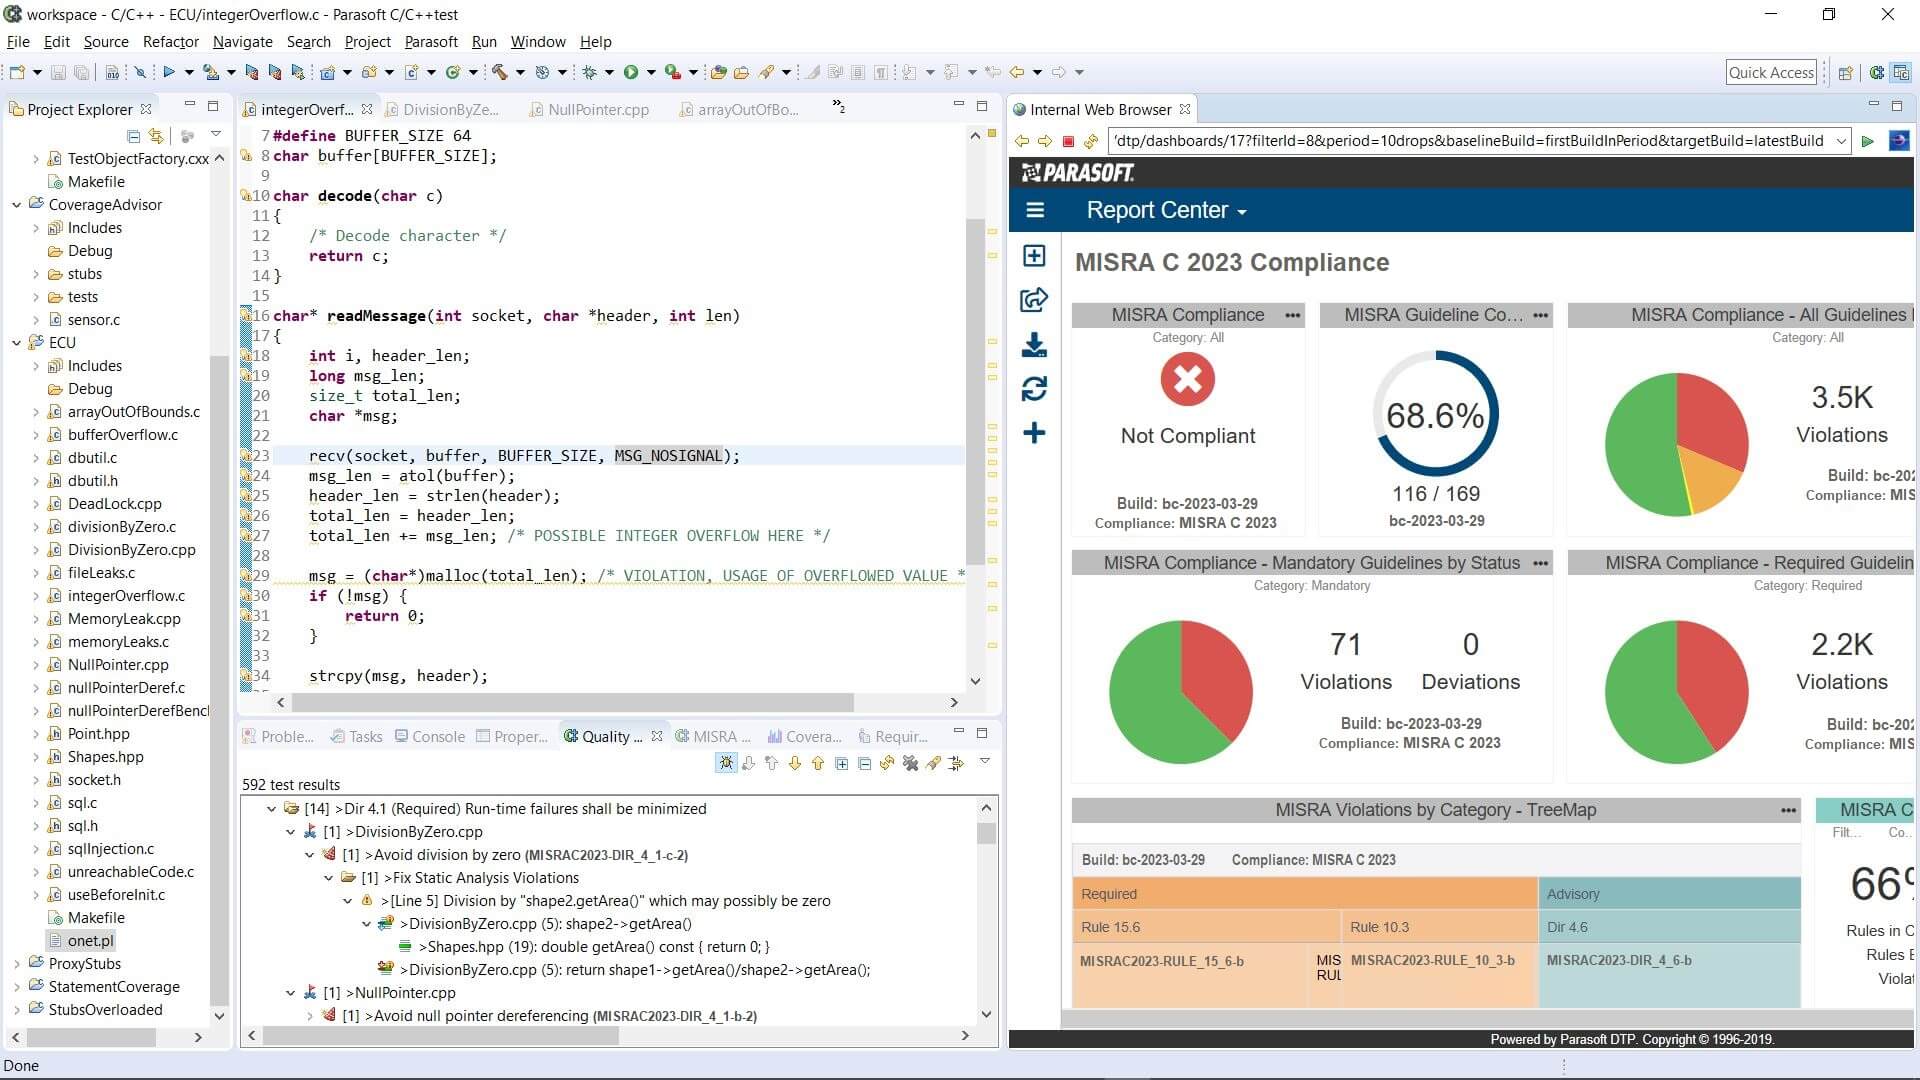 Capture d'écran de Parasoft C/C++test et DTP Report Center montrant la conformité MISRA C 2012